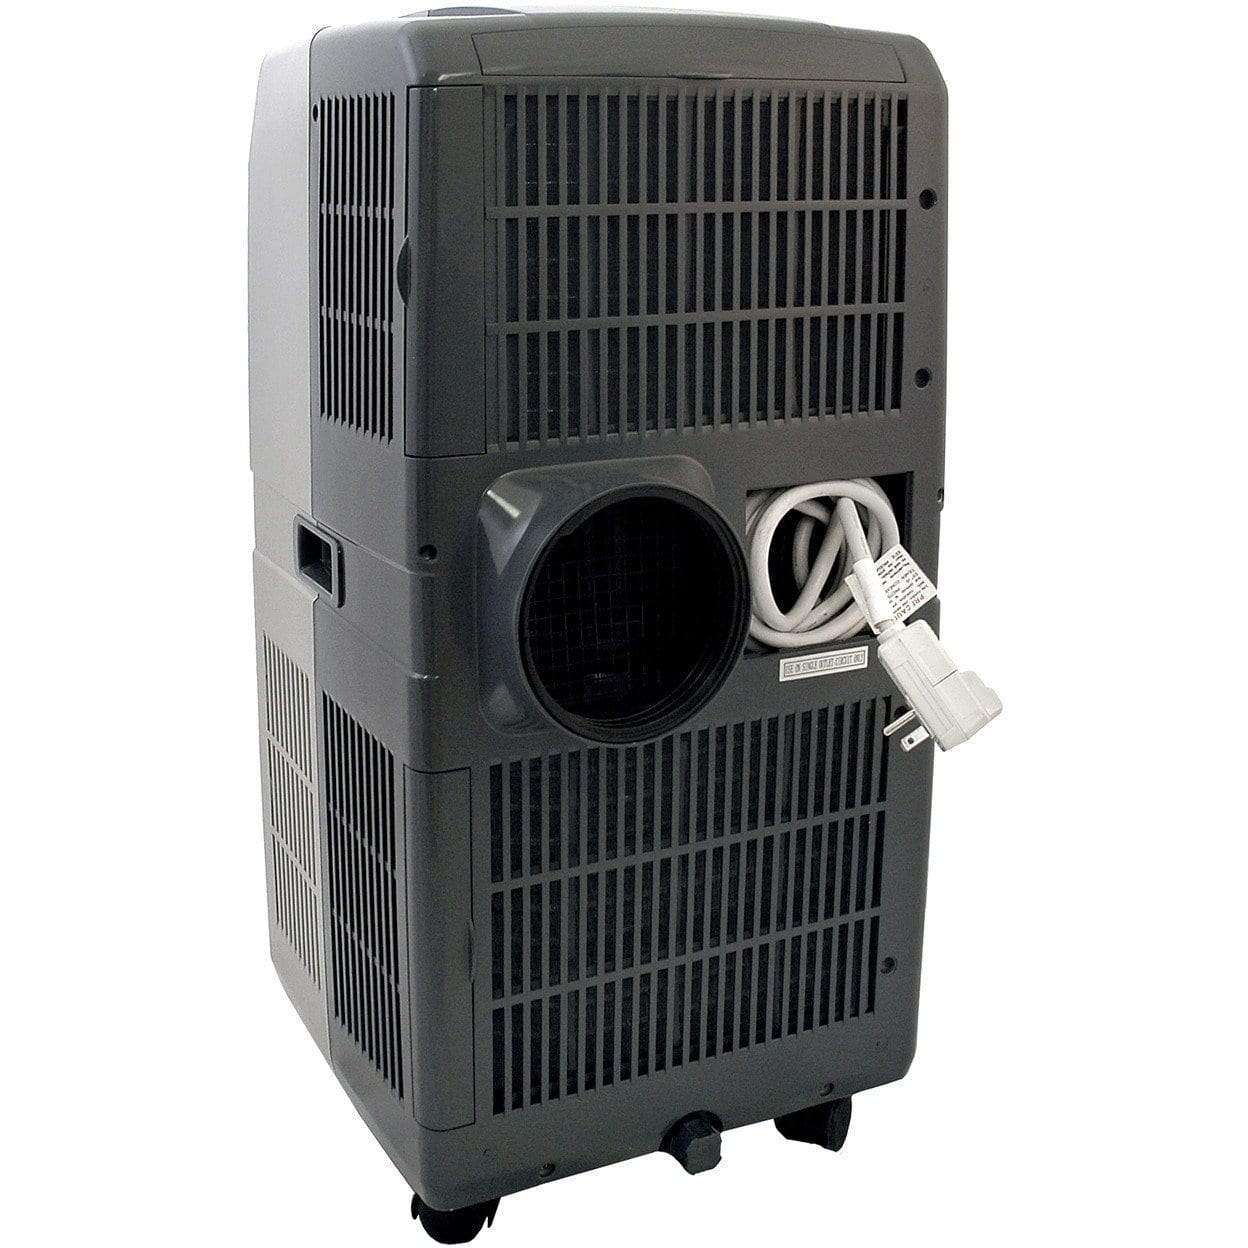 NewAir, NewAir AC-12000E Portable Air Conditioner